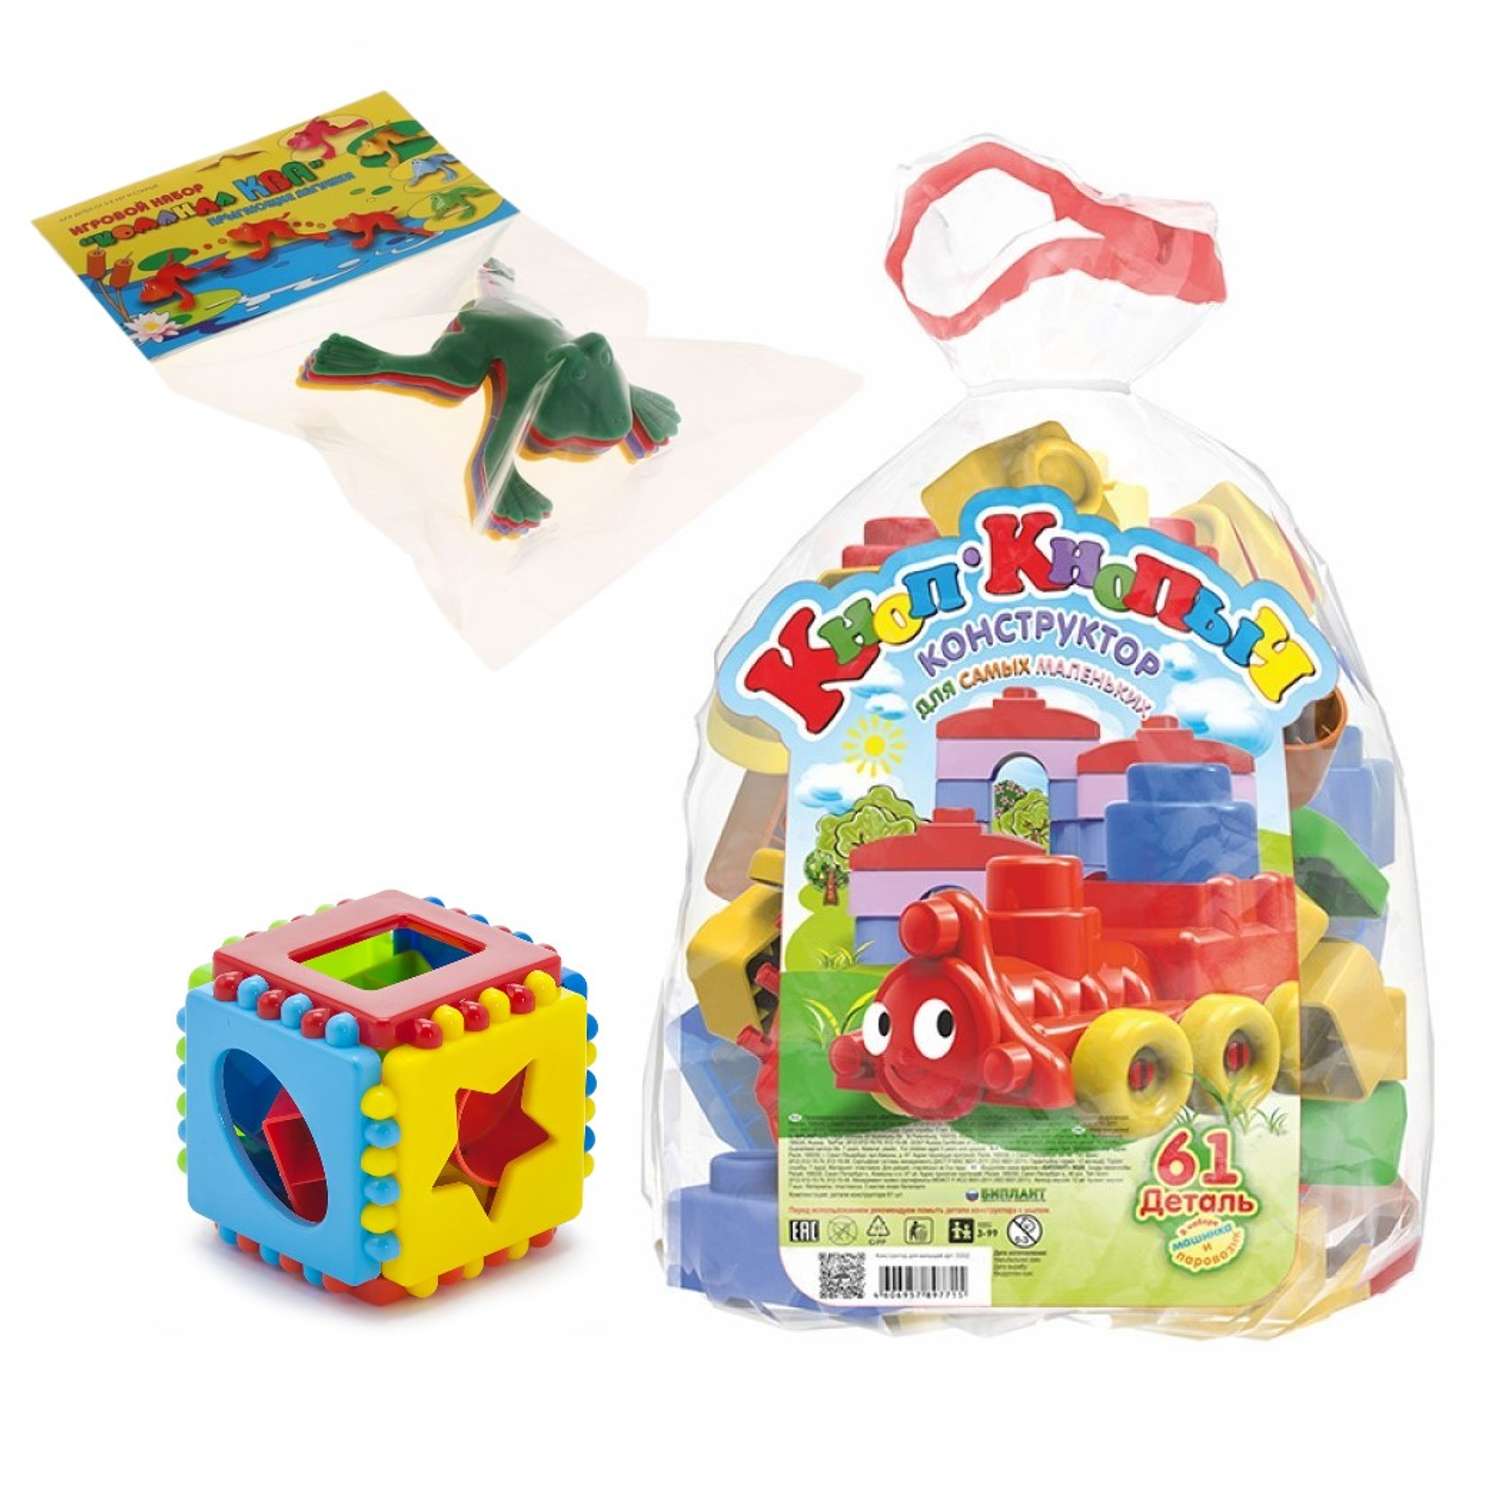 Развивающие игрушки БИПЛАНТ для малышей конструктор Кноп-Кнопыч 61 деталь + Сортер кубик малый + Команда КВА - фото 1